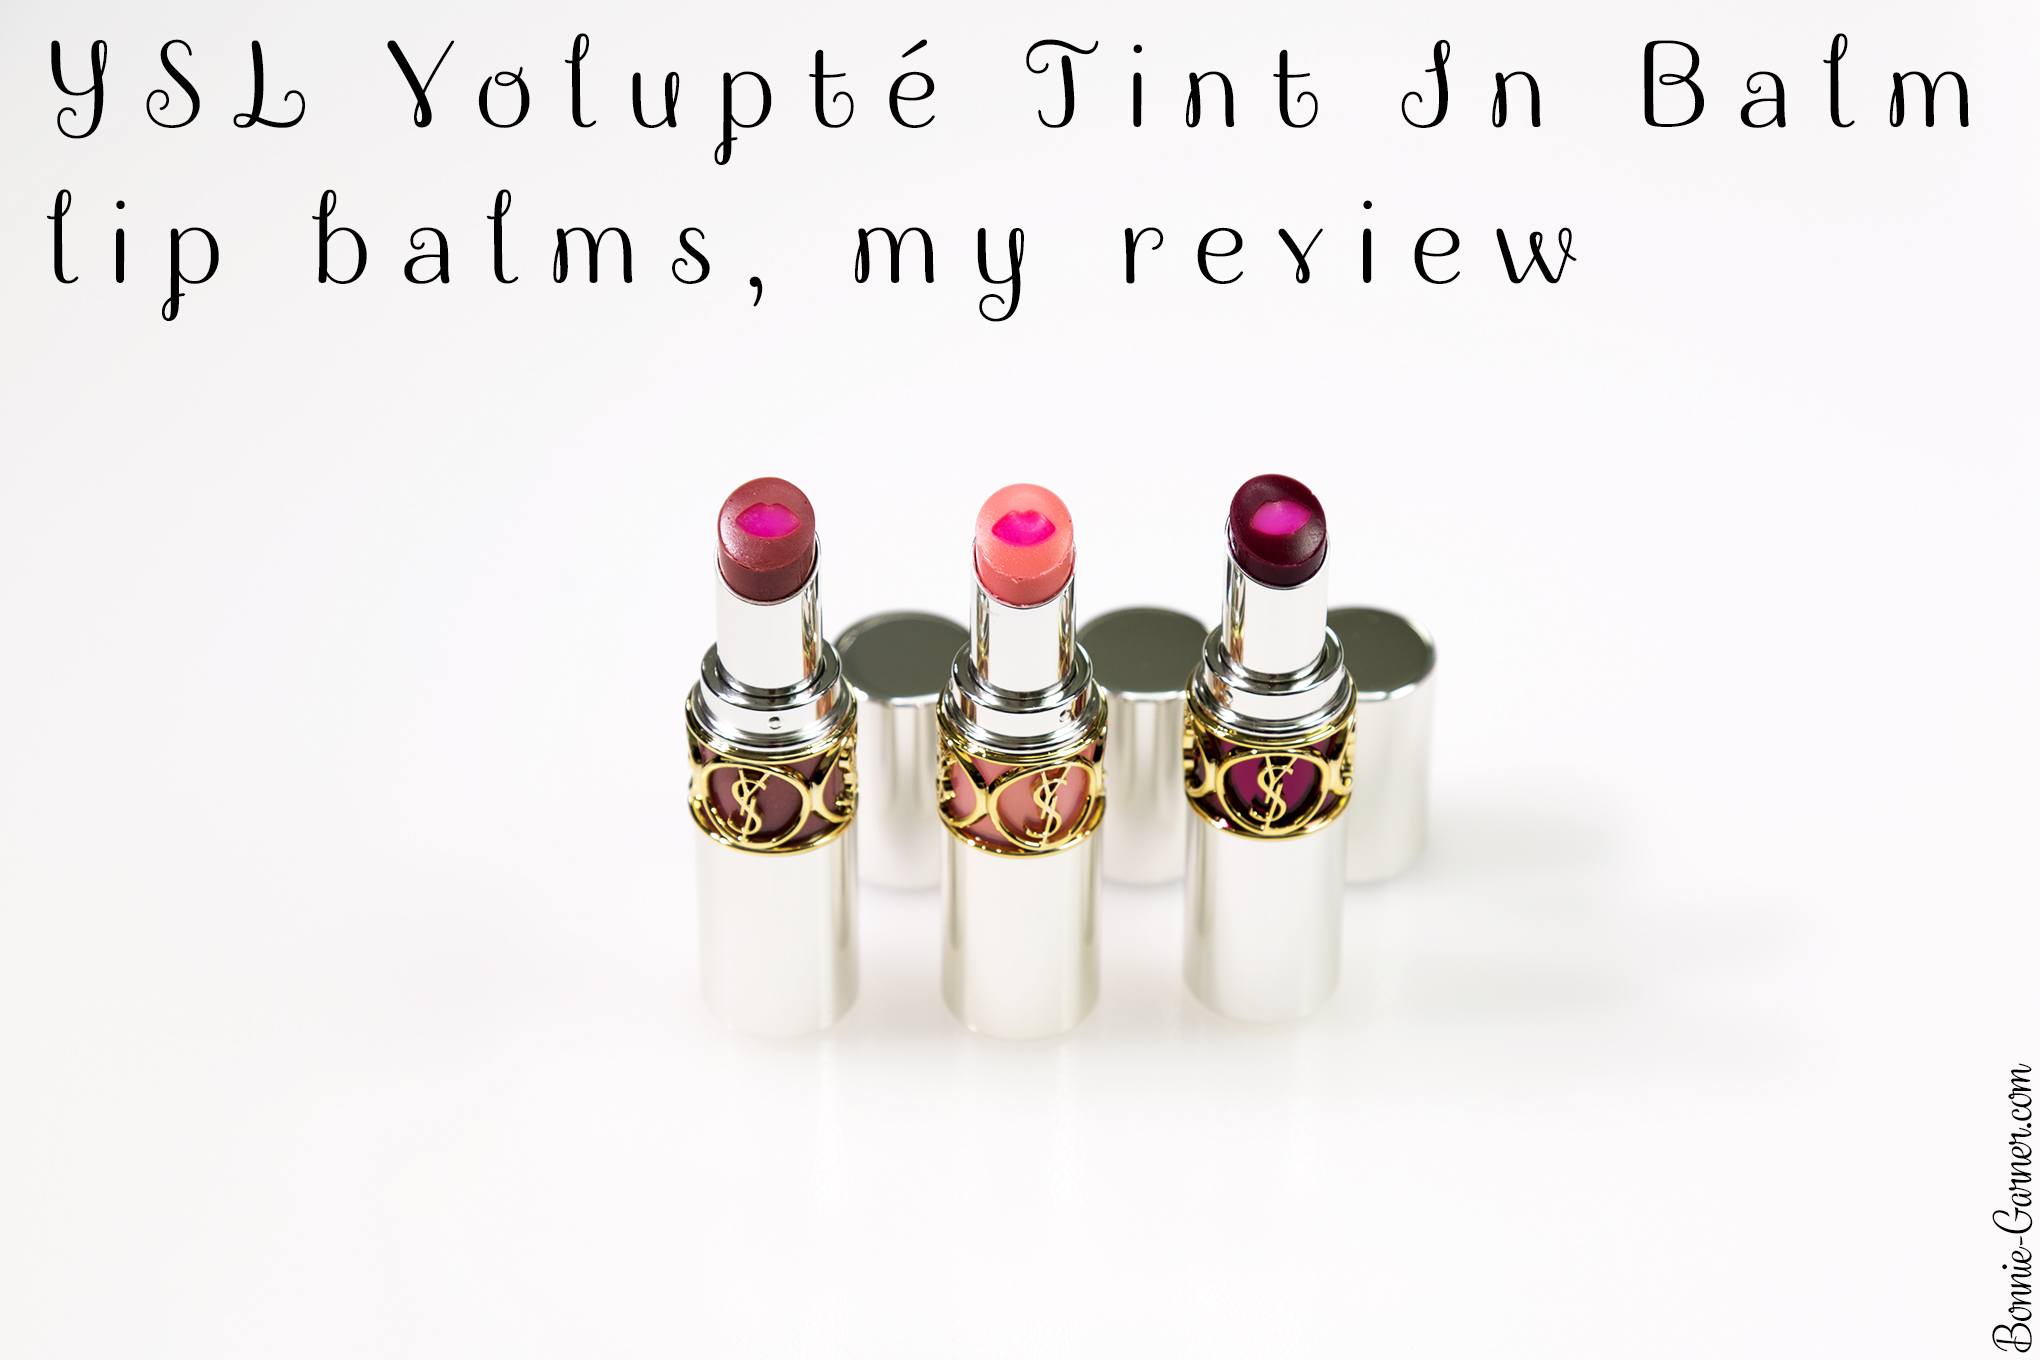 YSL Volupté Tint In Balm lip balms, my review